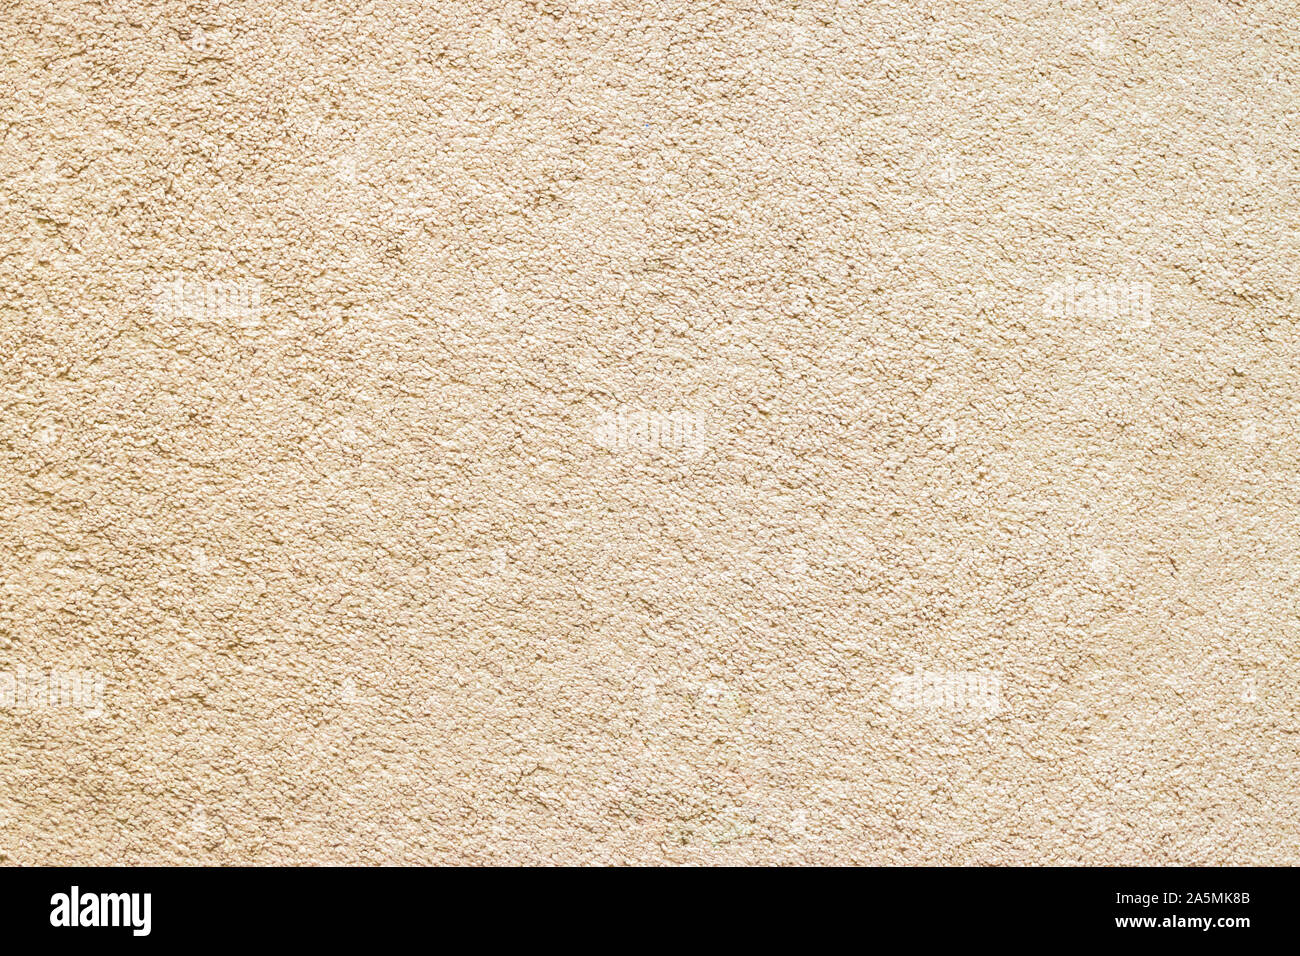 La textura de la alfombra beige, marrón claro de fondo alfombra de piso Foto de stock